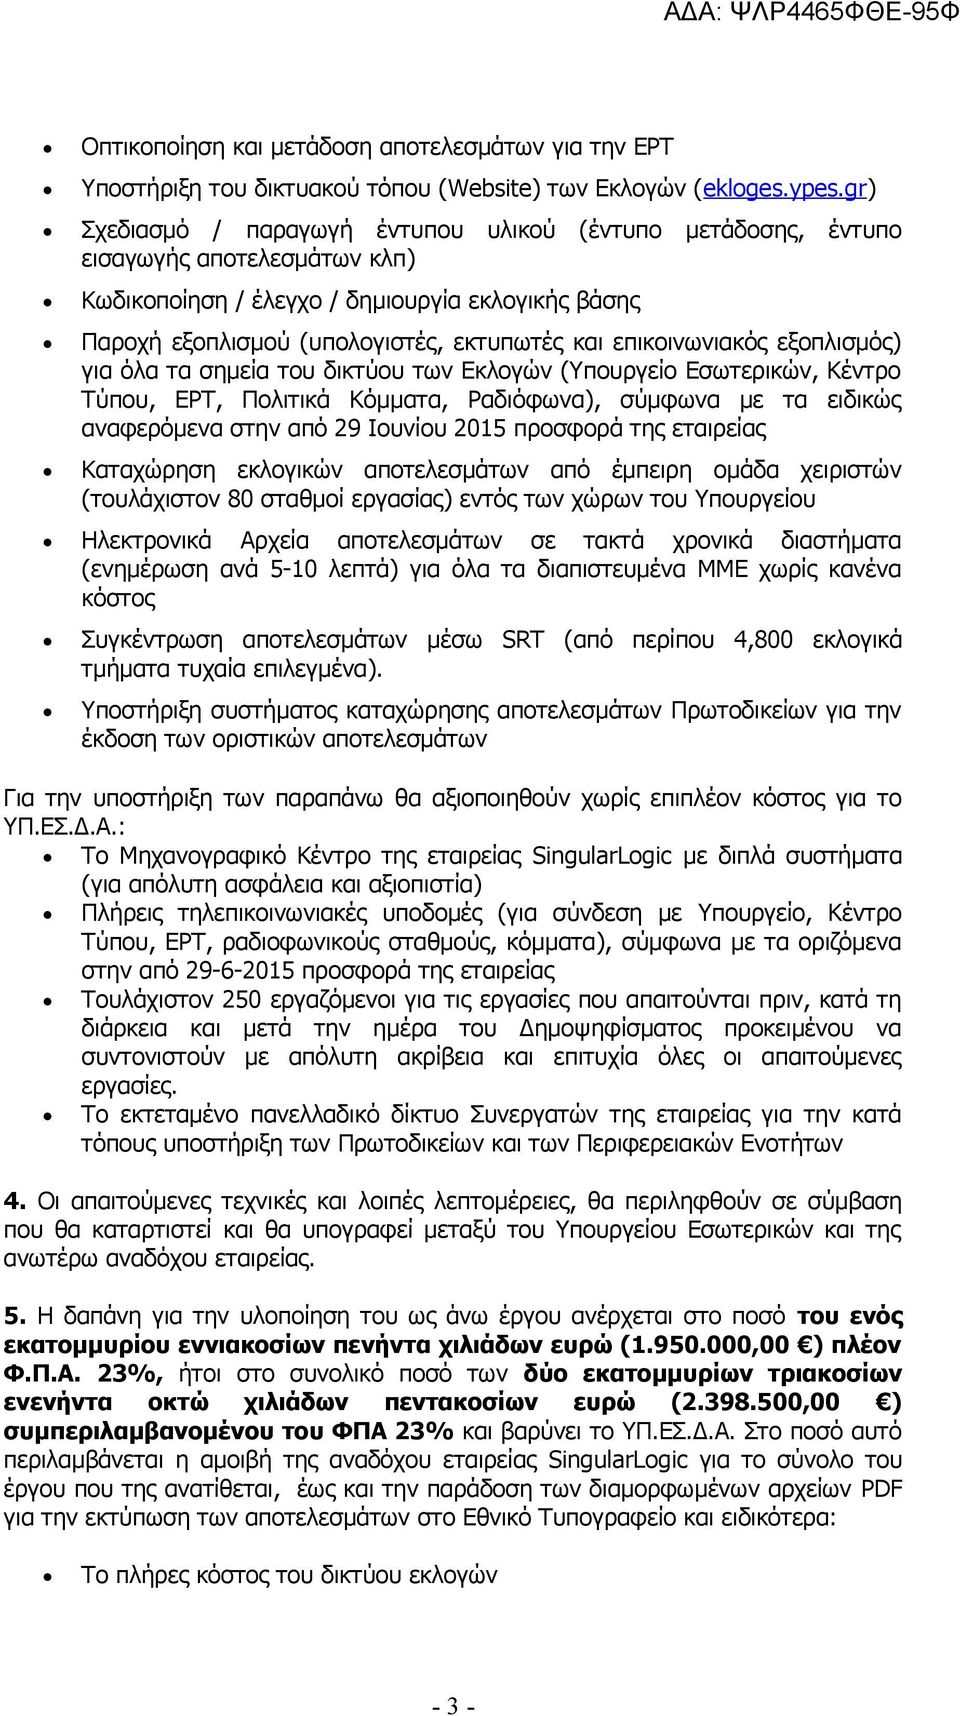 επικοινωνιακός εξοπλισμός) για όλα τα σημεία του δικτύου των Εκλογών (Υπουργείο Εσωτερικών, Κέντρο Τύπου, ΕΡΤ, Πολιτικά Κόμματα, Ραδιόφωνα), σύμφωνα με τα ειδικώς αναφερόμενα στην από 29 Ιουνίου 2015